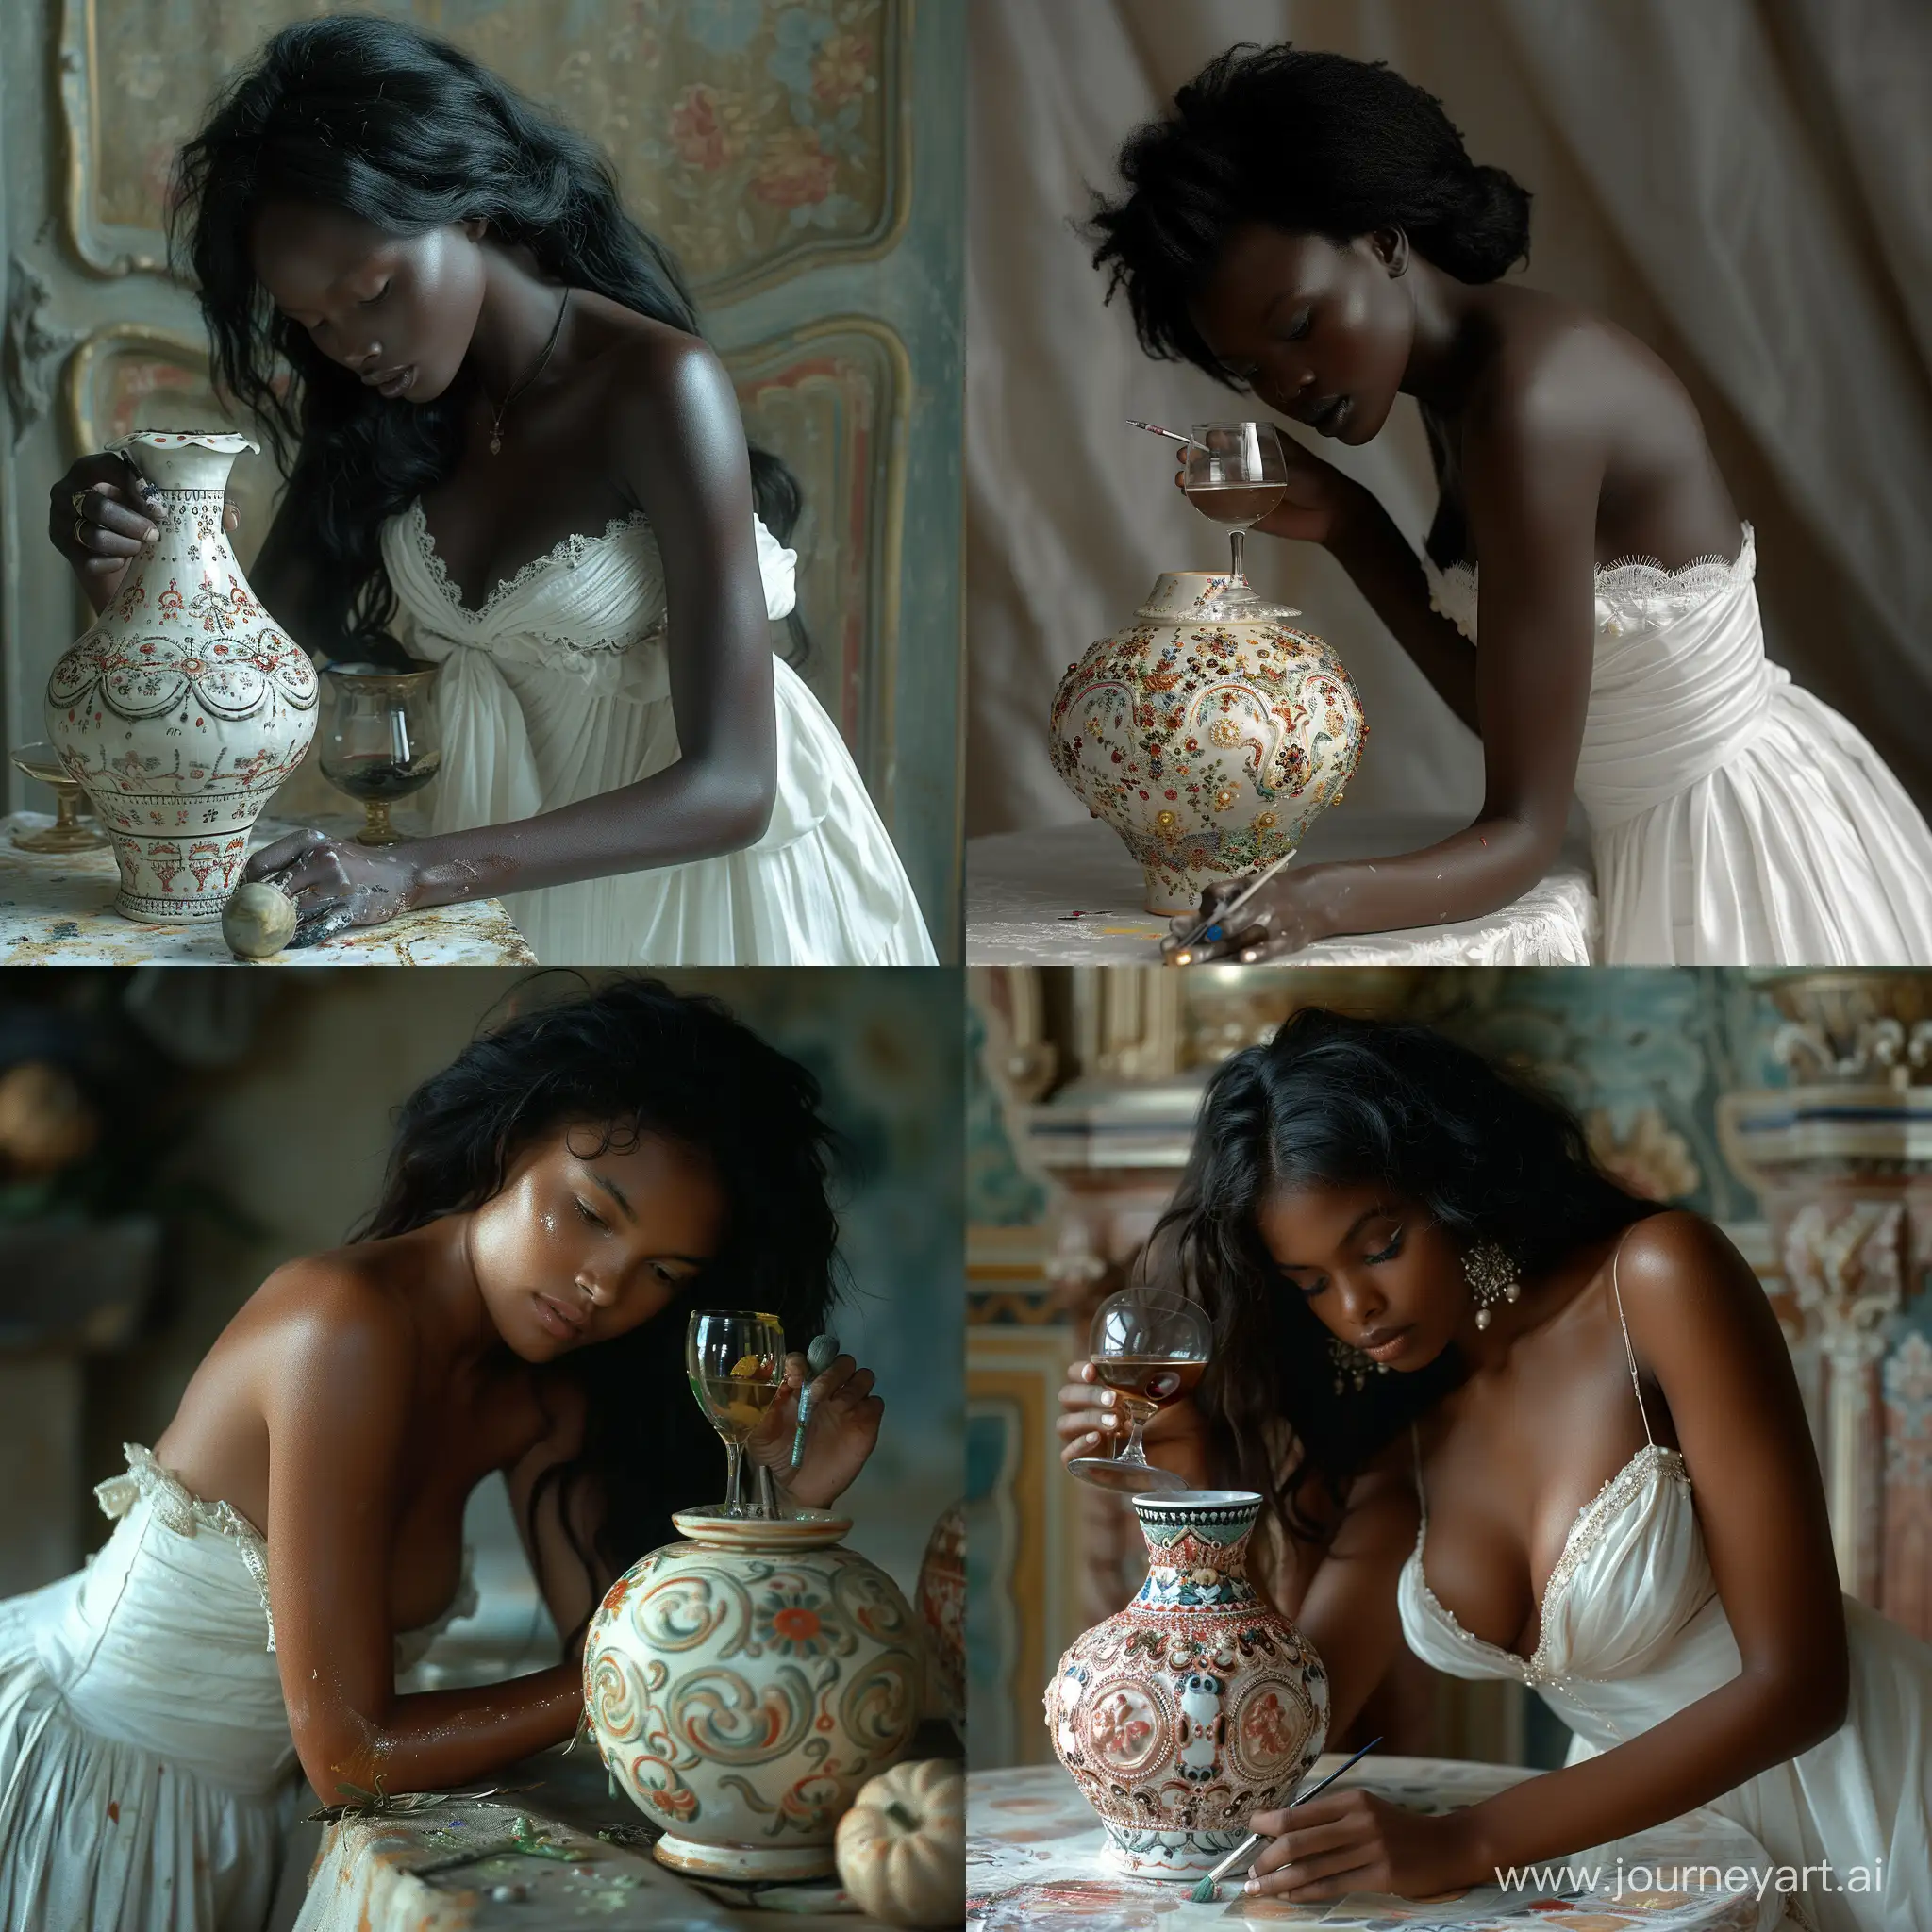 jeune femme africaine d'origine malgache merina, des hauts plateaux de Madagascar, black skin, la jeune femme est penché sur une table ou elle peint une vase de céramique décoré, robe blanche, tête et bras nus, avec à la main un verre de vin, cheveux noir , photo dans l'esprit de Annie Leibovitz --stylize 750 --v 6